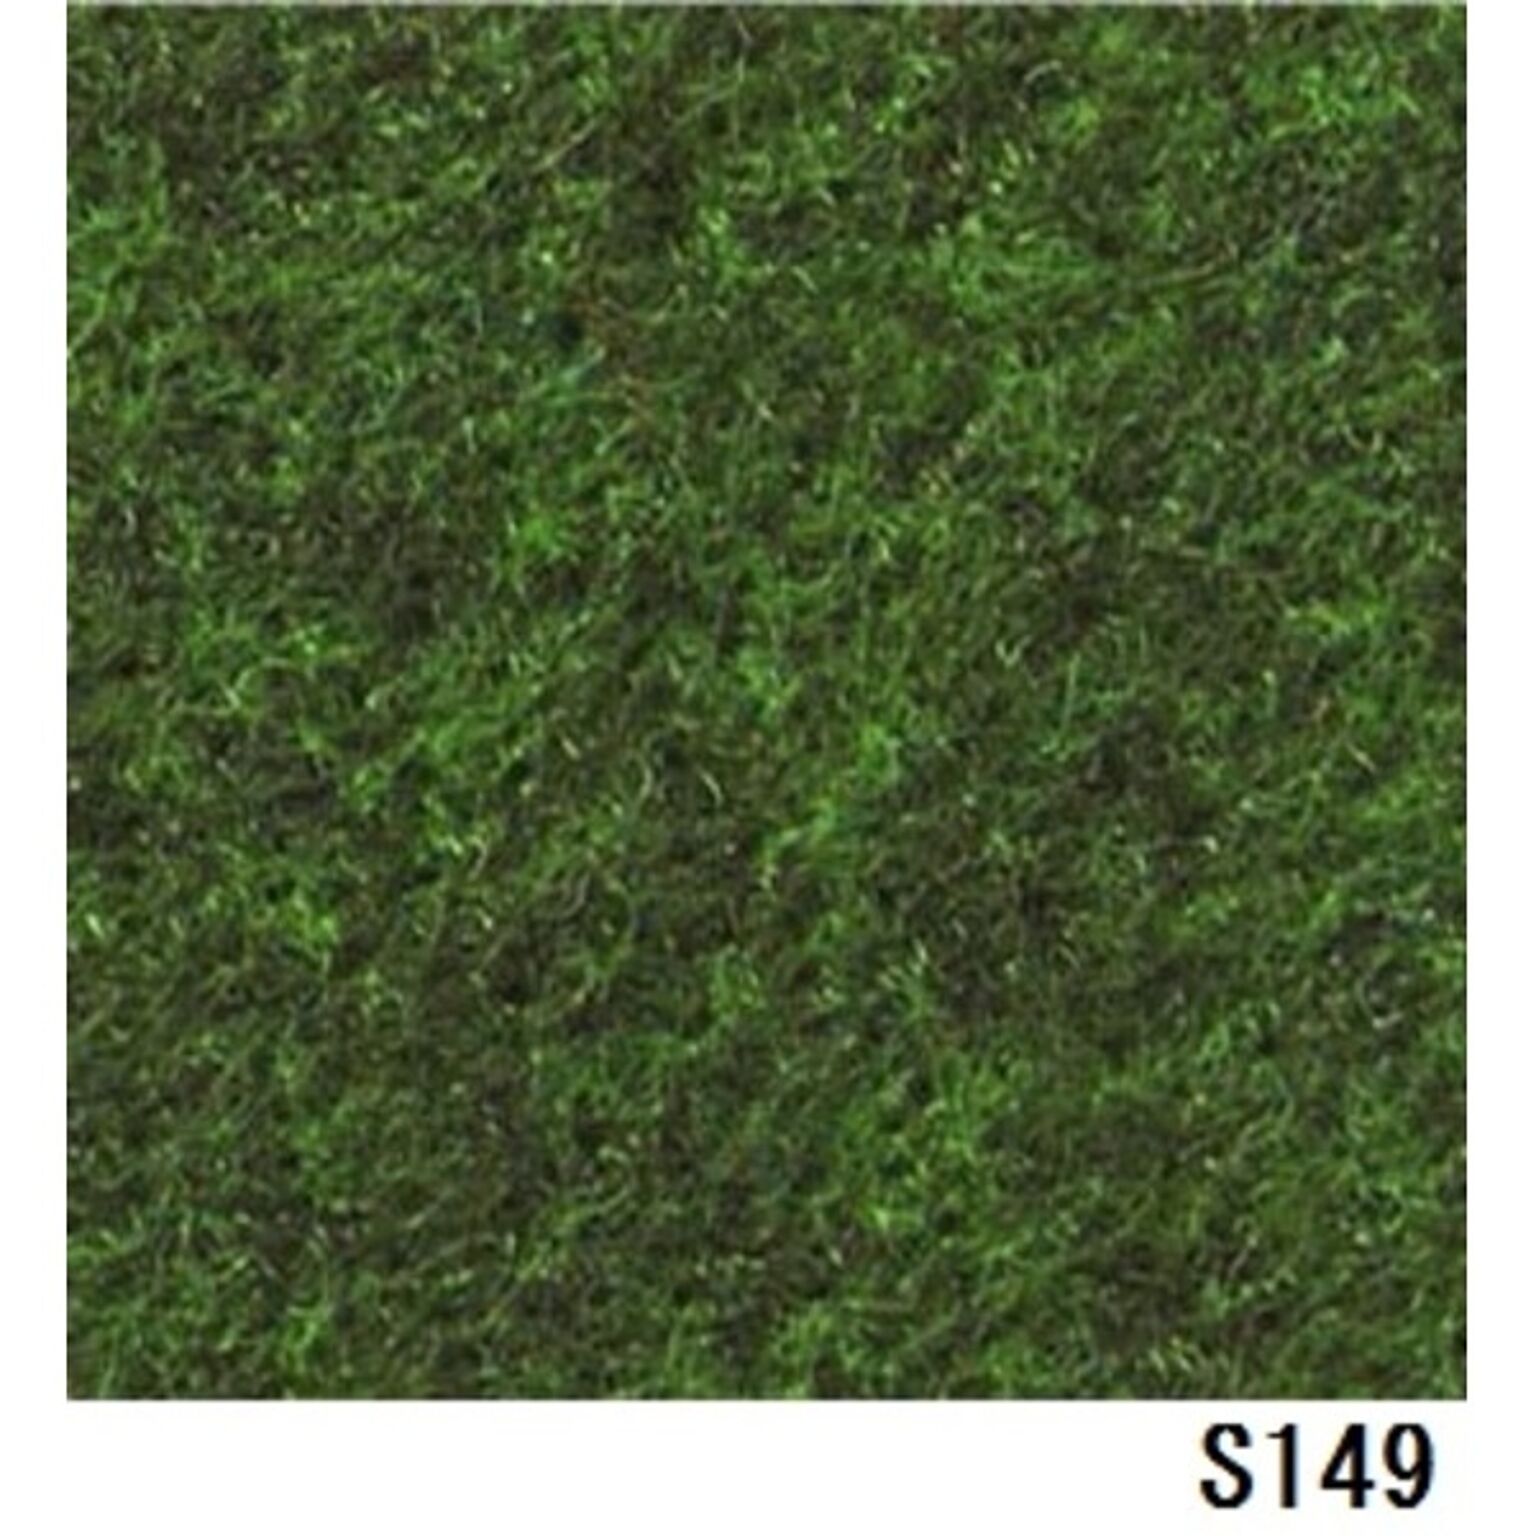 パンチカーペット サンゲツSペットECO 色番S-149 91cm巾×1m - 通販 | RoomClipショッピング